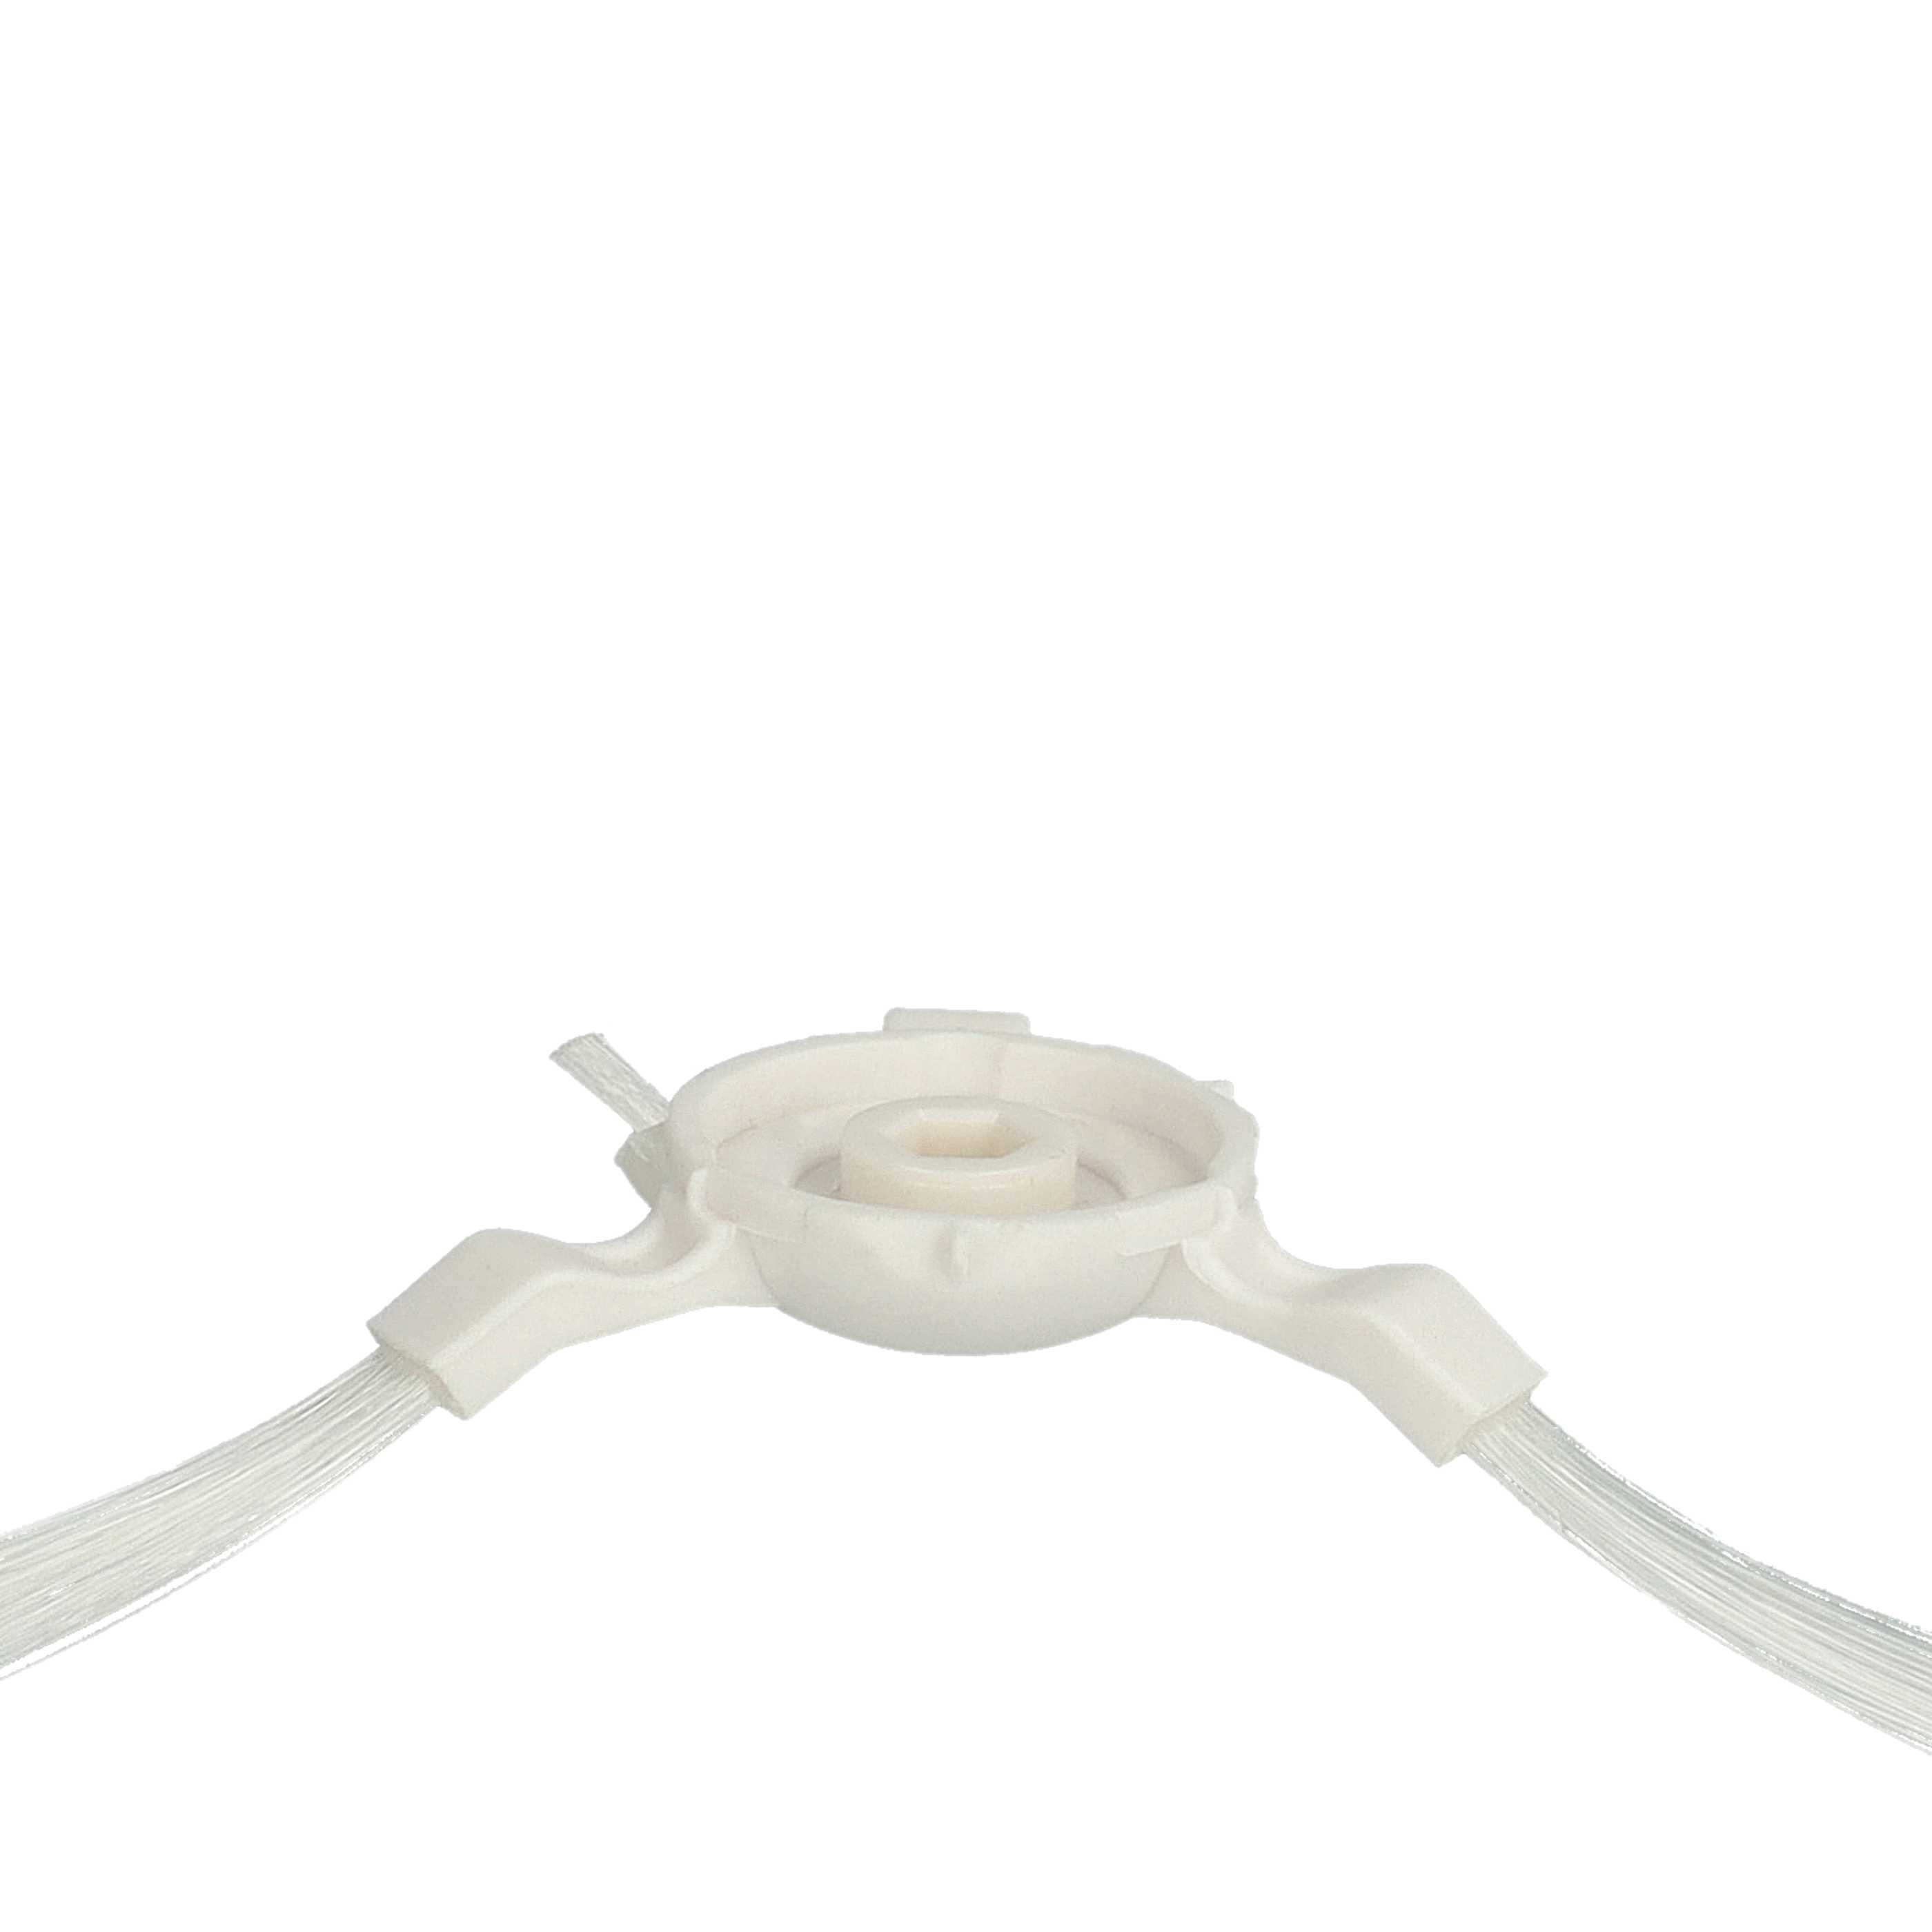 2x Cepillo lateral 3 brazos reemplaza Rowenta ZR720002 para robot aspirador Tefal - Set de cepillos blanco